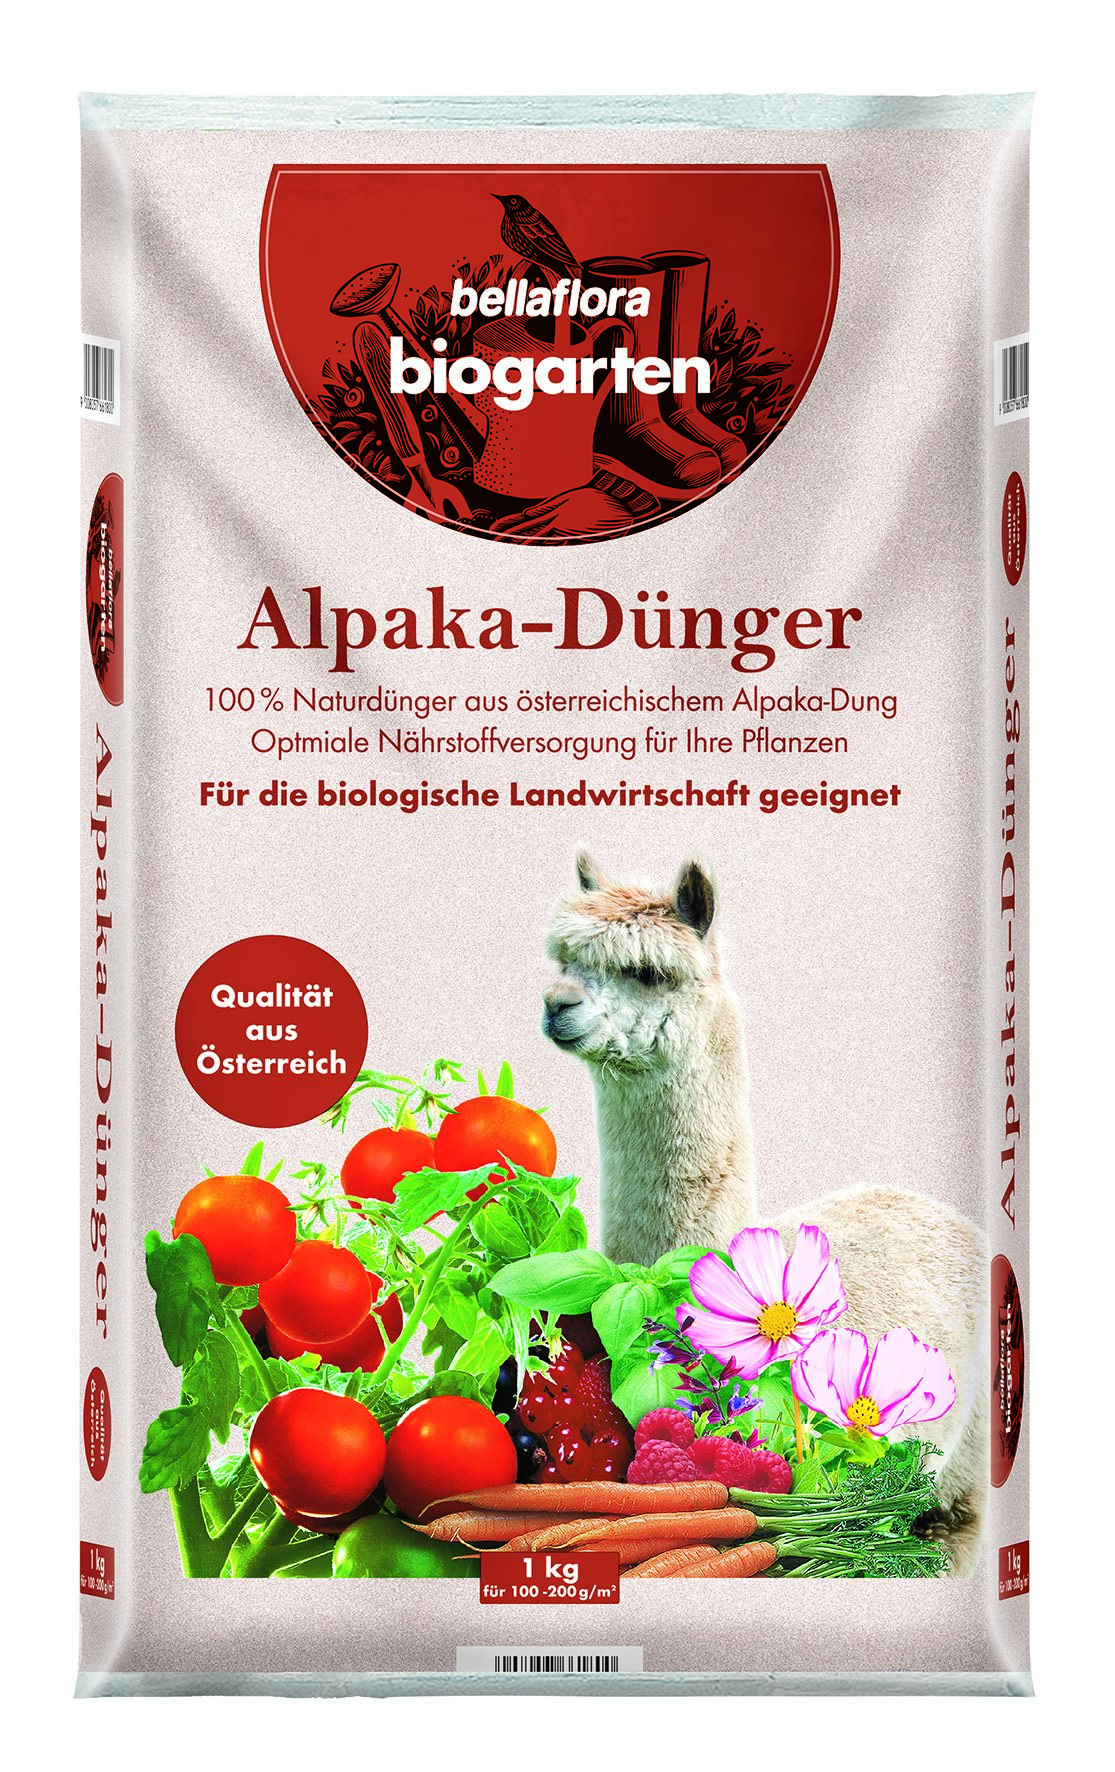 bellaflora biogarten Alpaka-Dünger